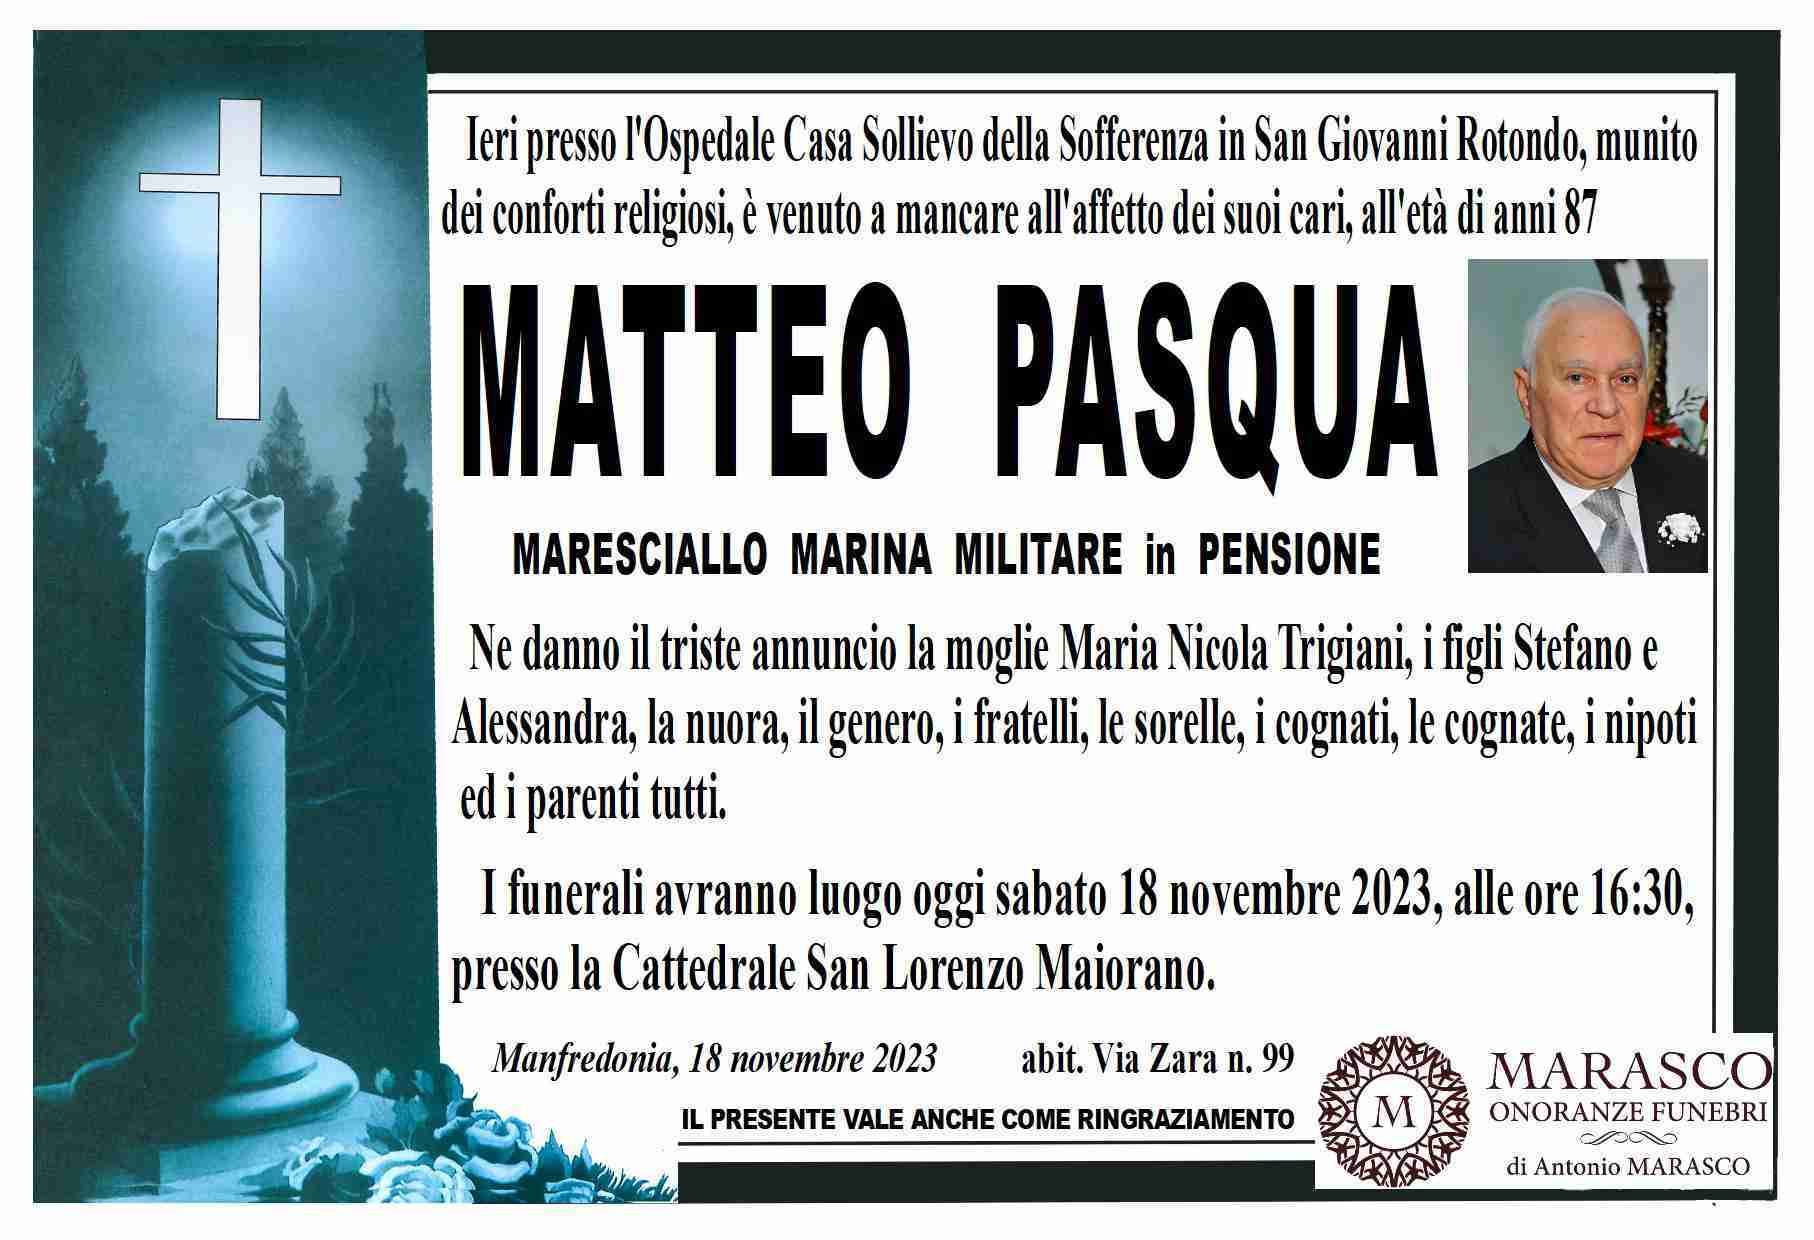 Matteo Pasqua